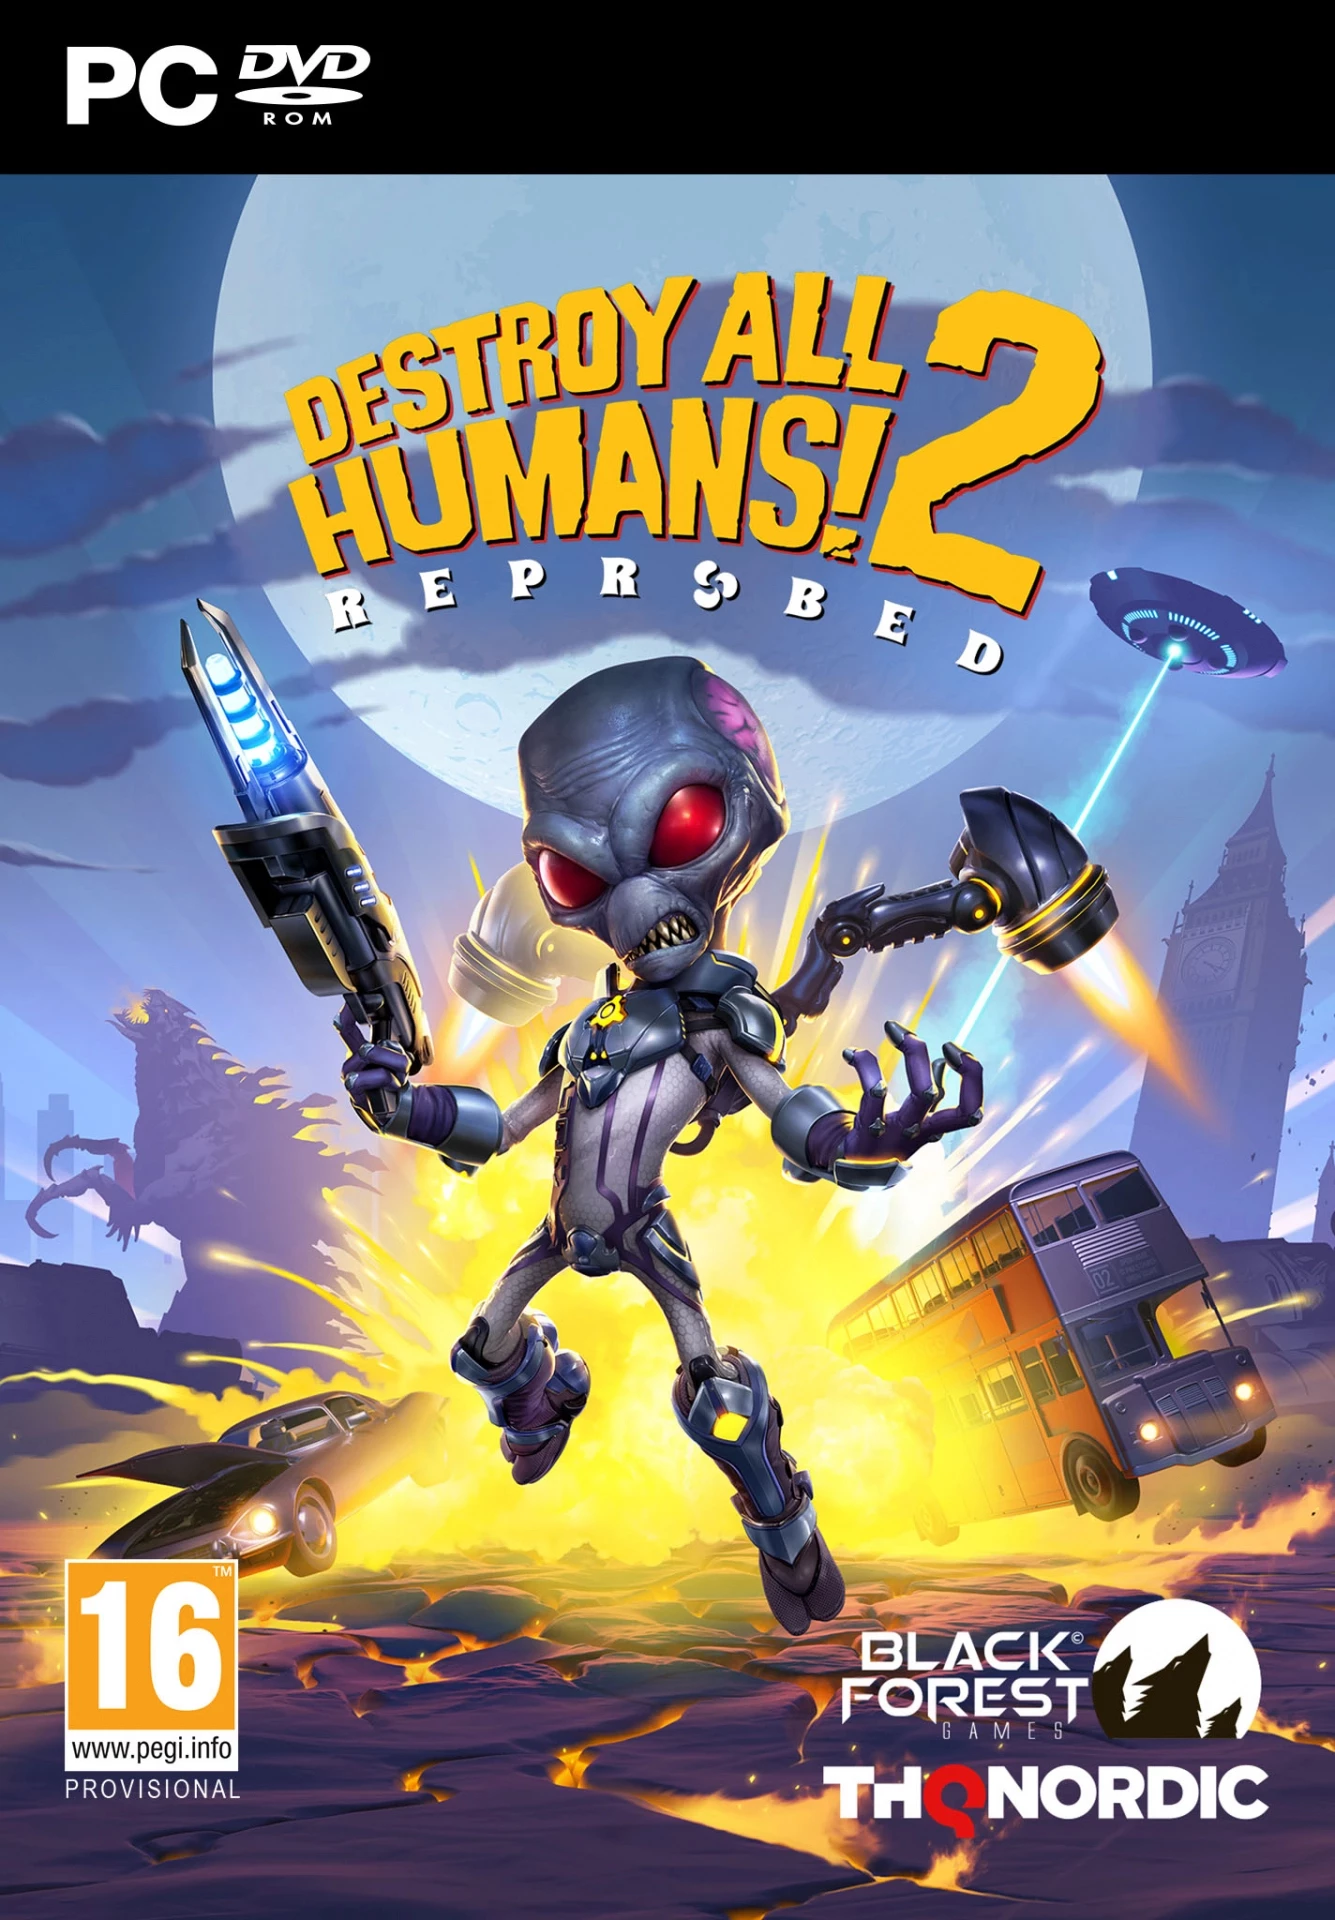 Destroy All Humans 2 Reprobed voor de PC Gaming preorder plaatsen op nedgame.nl